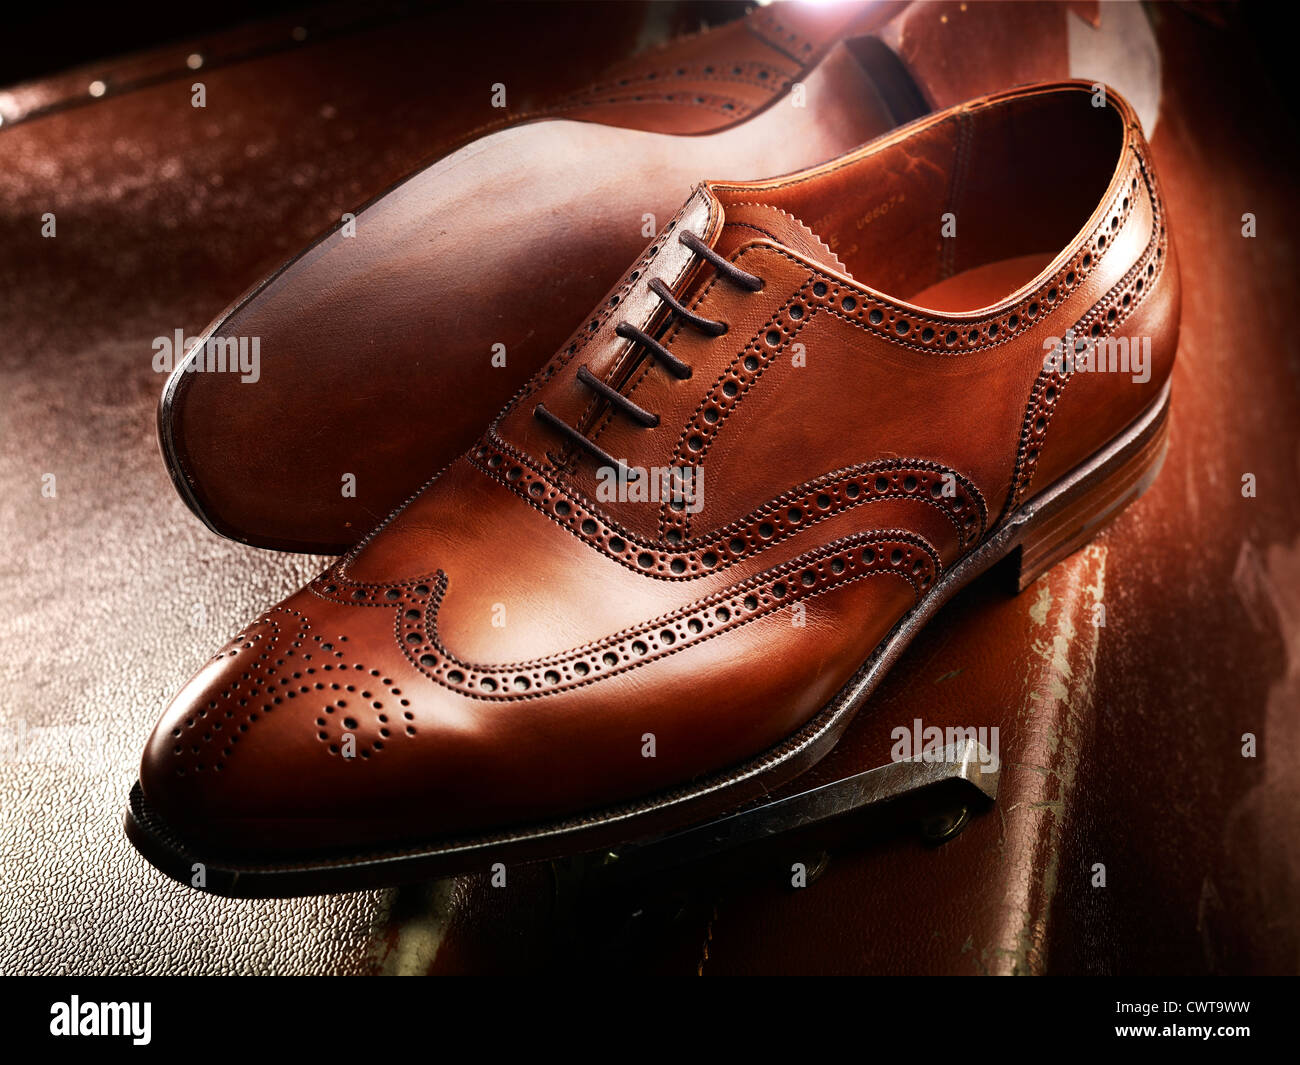 Caro de lujo de cuero marrón zapatos brogue en una maleta de cuero vintage Foto de stock